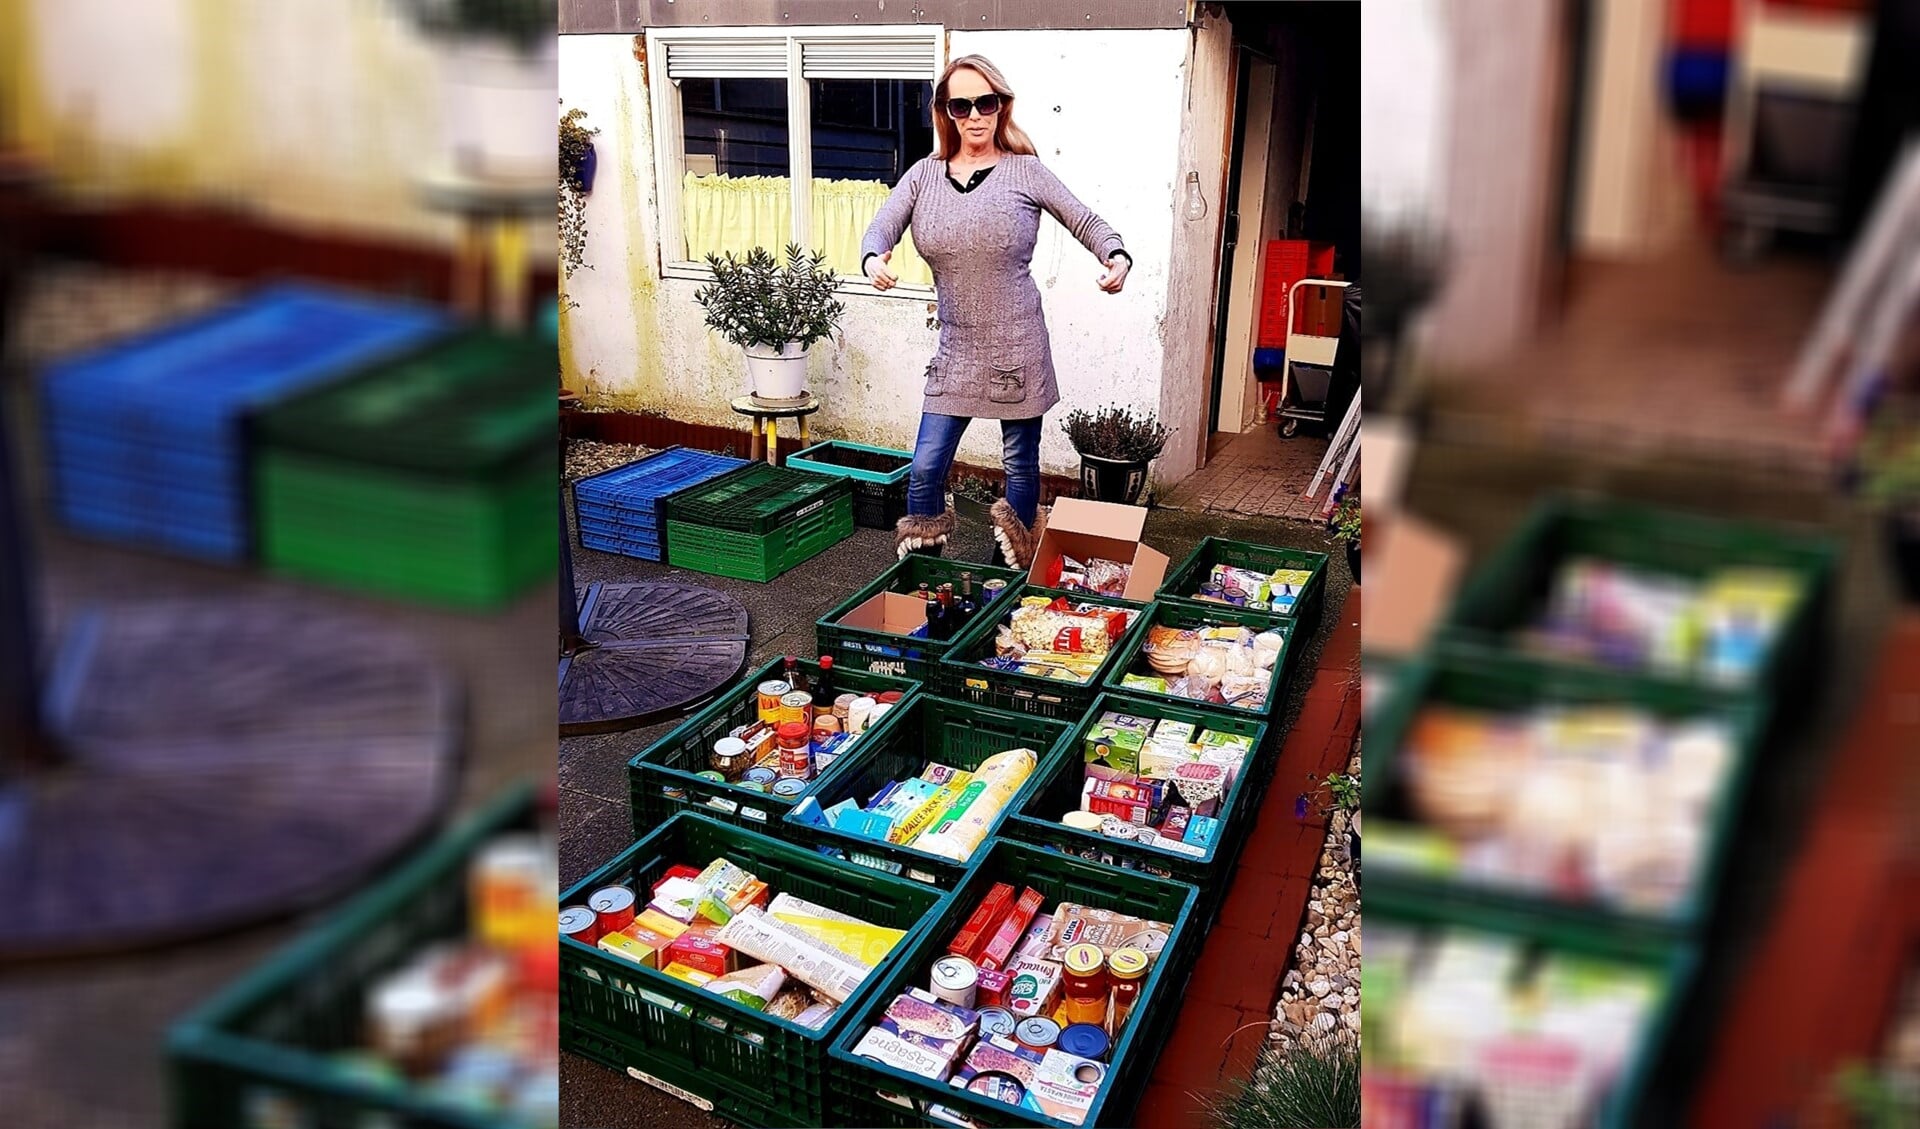 Een bijzonder initiatief van mevrouw Anja Koole-van de Graaf uit Leidschendam.
Zij vulde in een mum van tijd 10 kratten met donaties voor de Voedselbank.